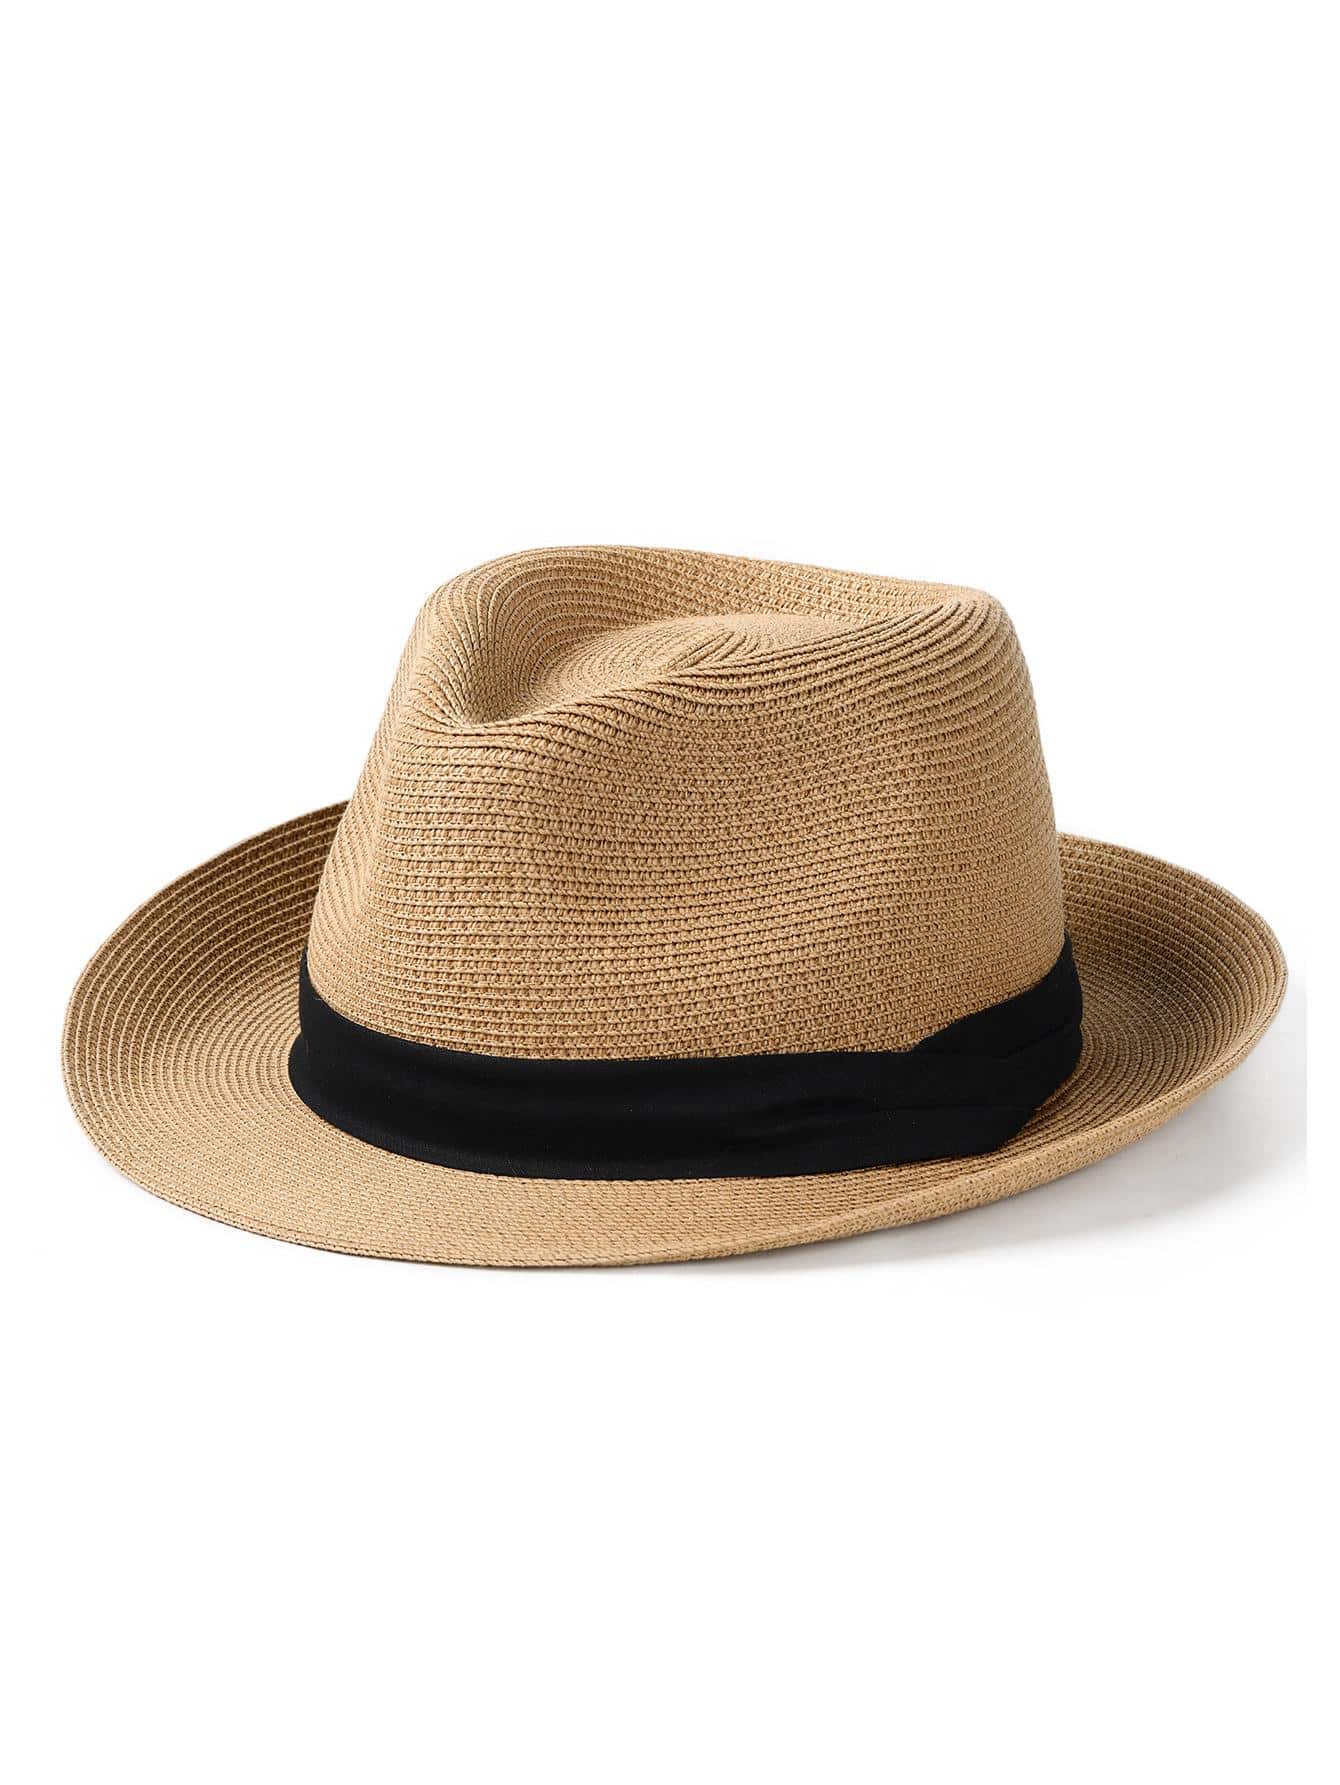 1шт унисекс лента декор бохо соломенная шляпа для улицы, хаки цена и фото